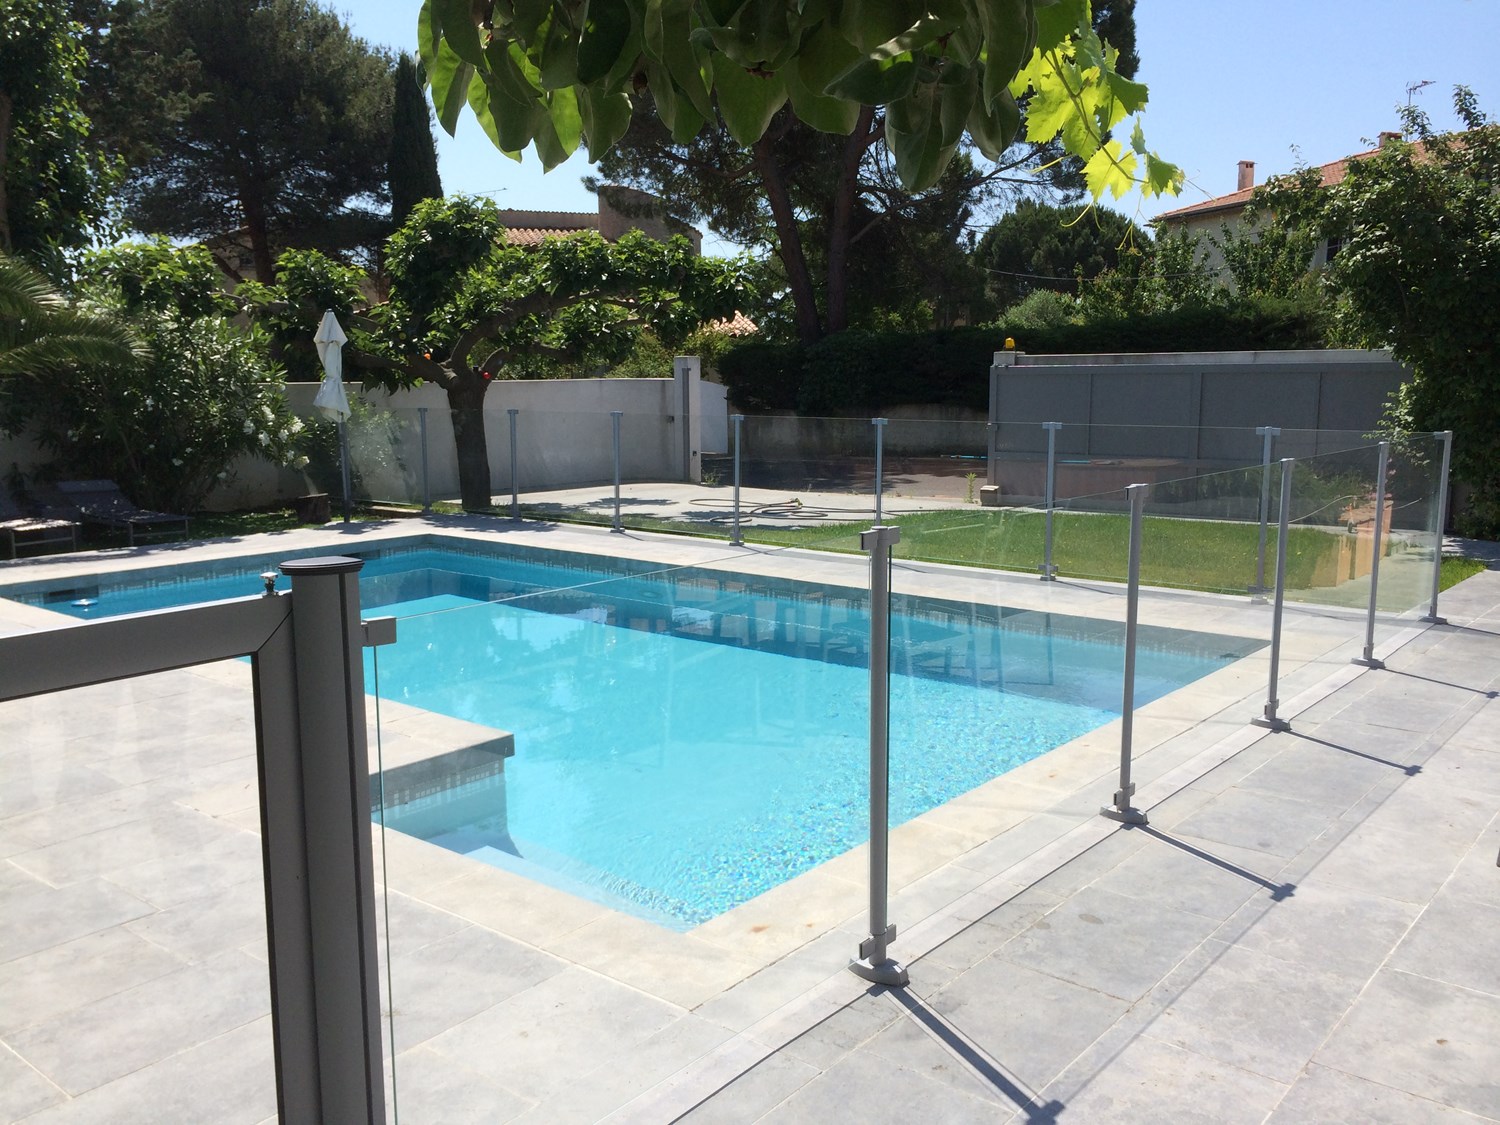 Barriere de piscine en verre trempé fabrication française sur mesure